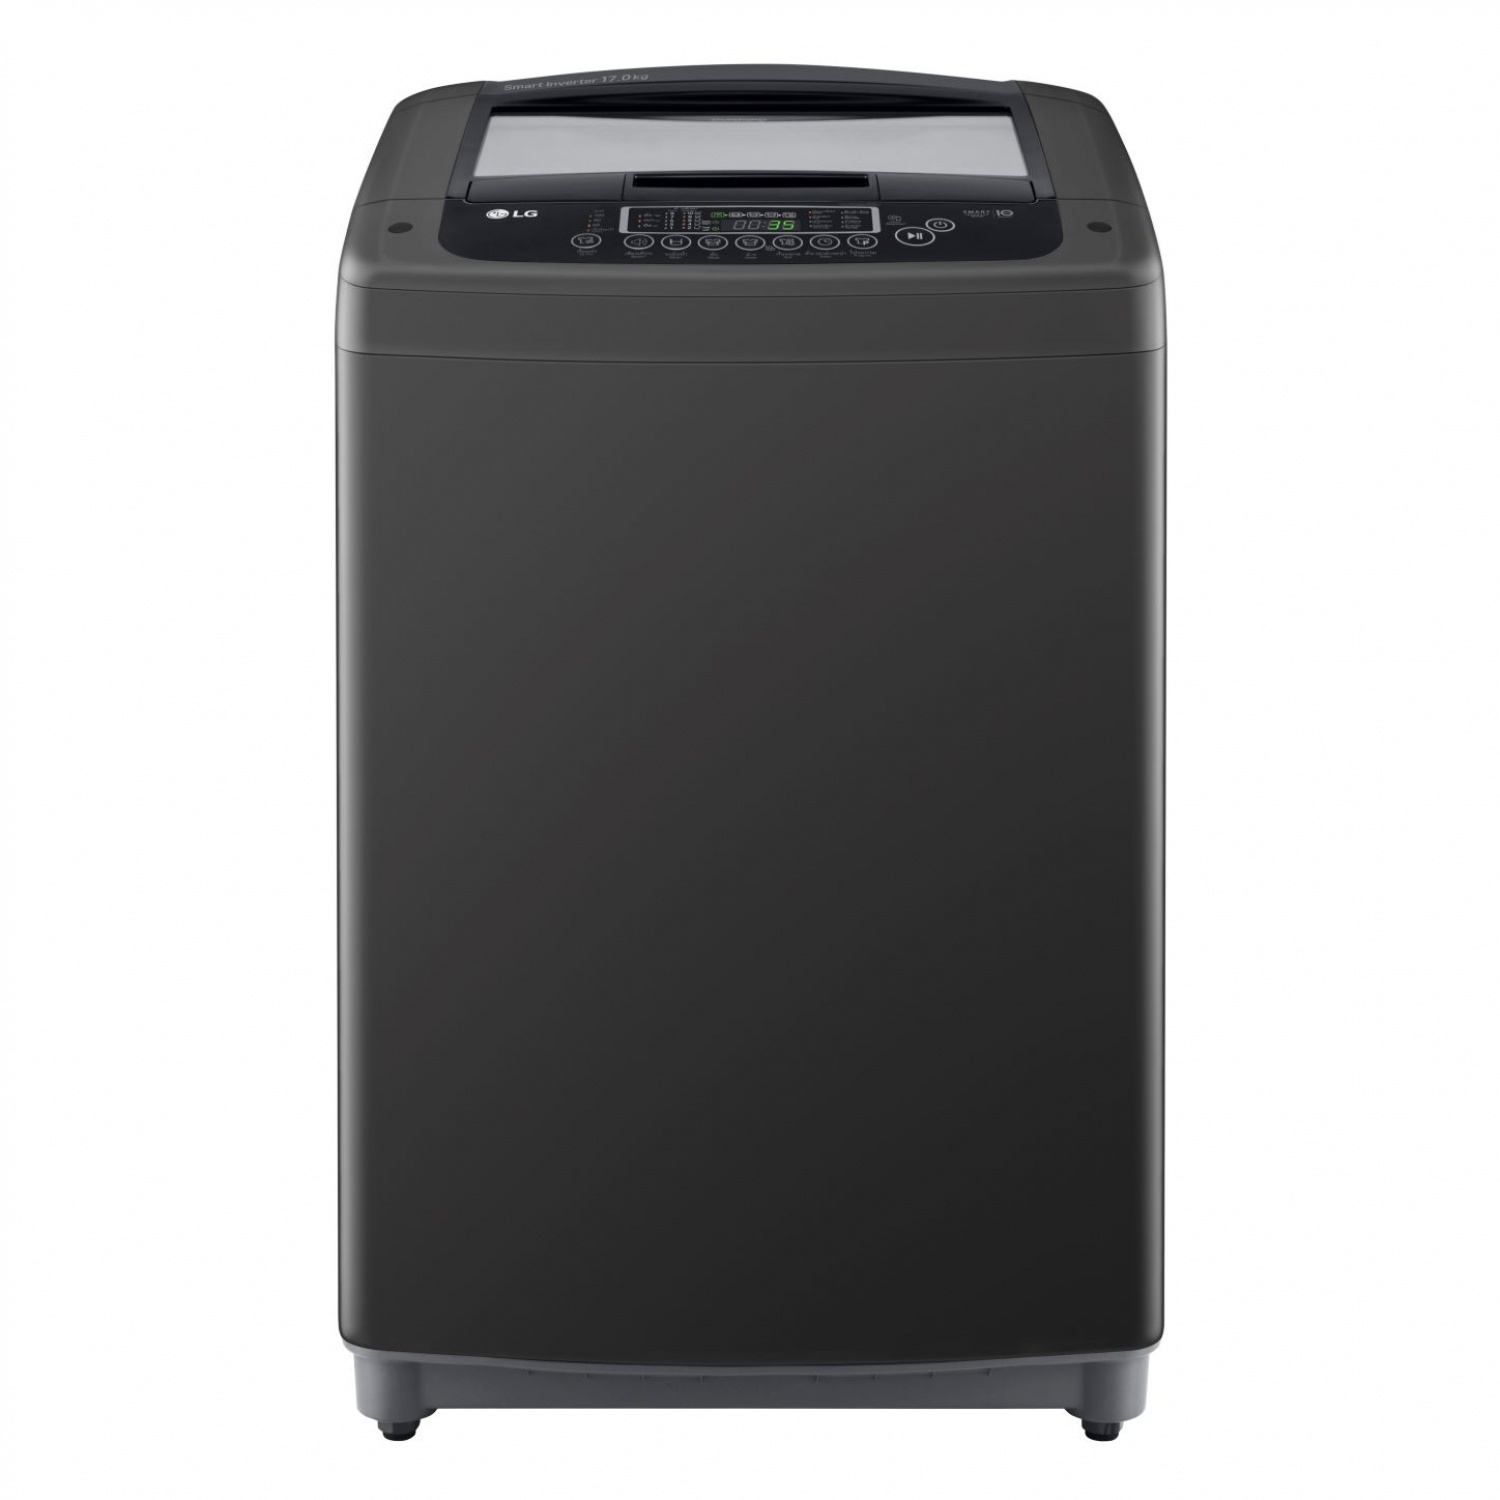 LG เครื่องซักผ้าฝาบน ขนาด 15 กก. รุ่น T2515VSPB สีดำ